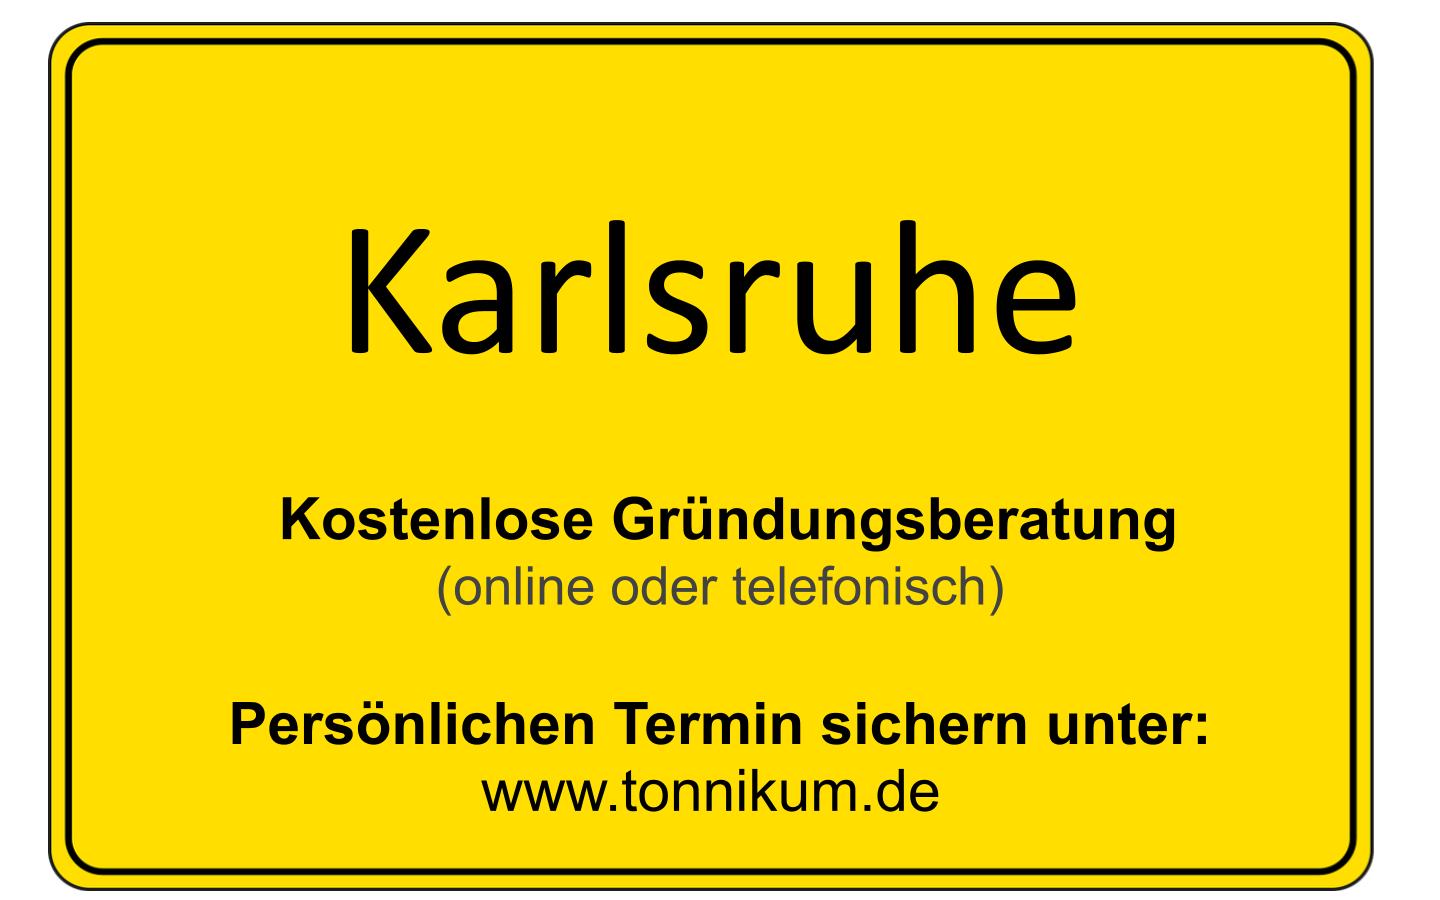 Karlsruhe Existenzgründungsberatung ⇒ kostenlose Erstberatung